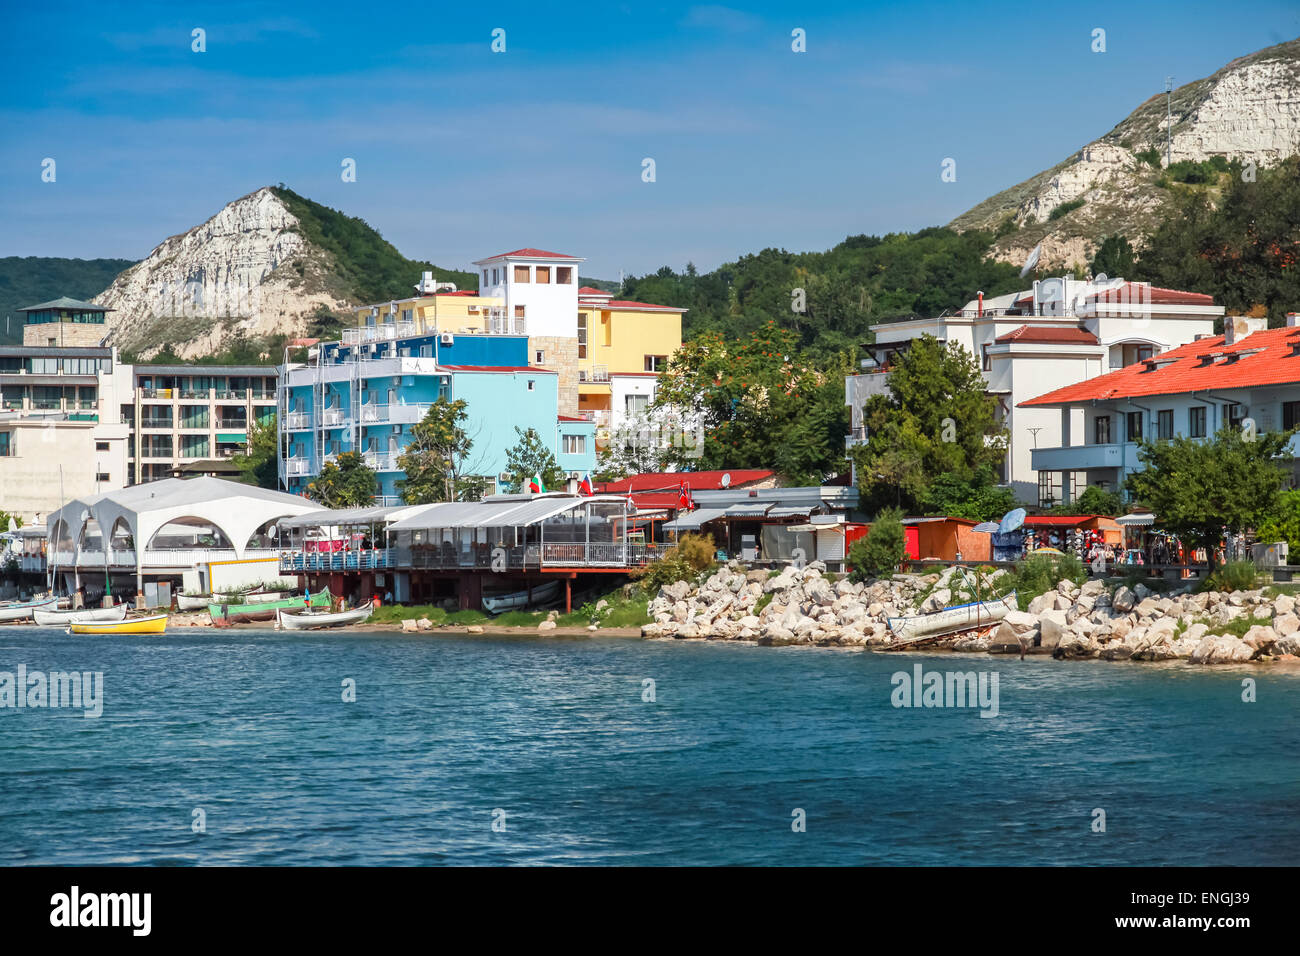 Paysage d'été de la ville de Balchik, côte de Mer Noire, région de Varna, Bulgarie Banque D'Images